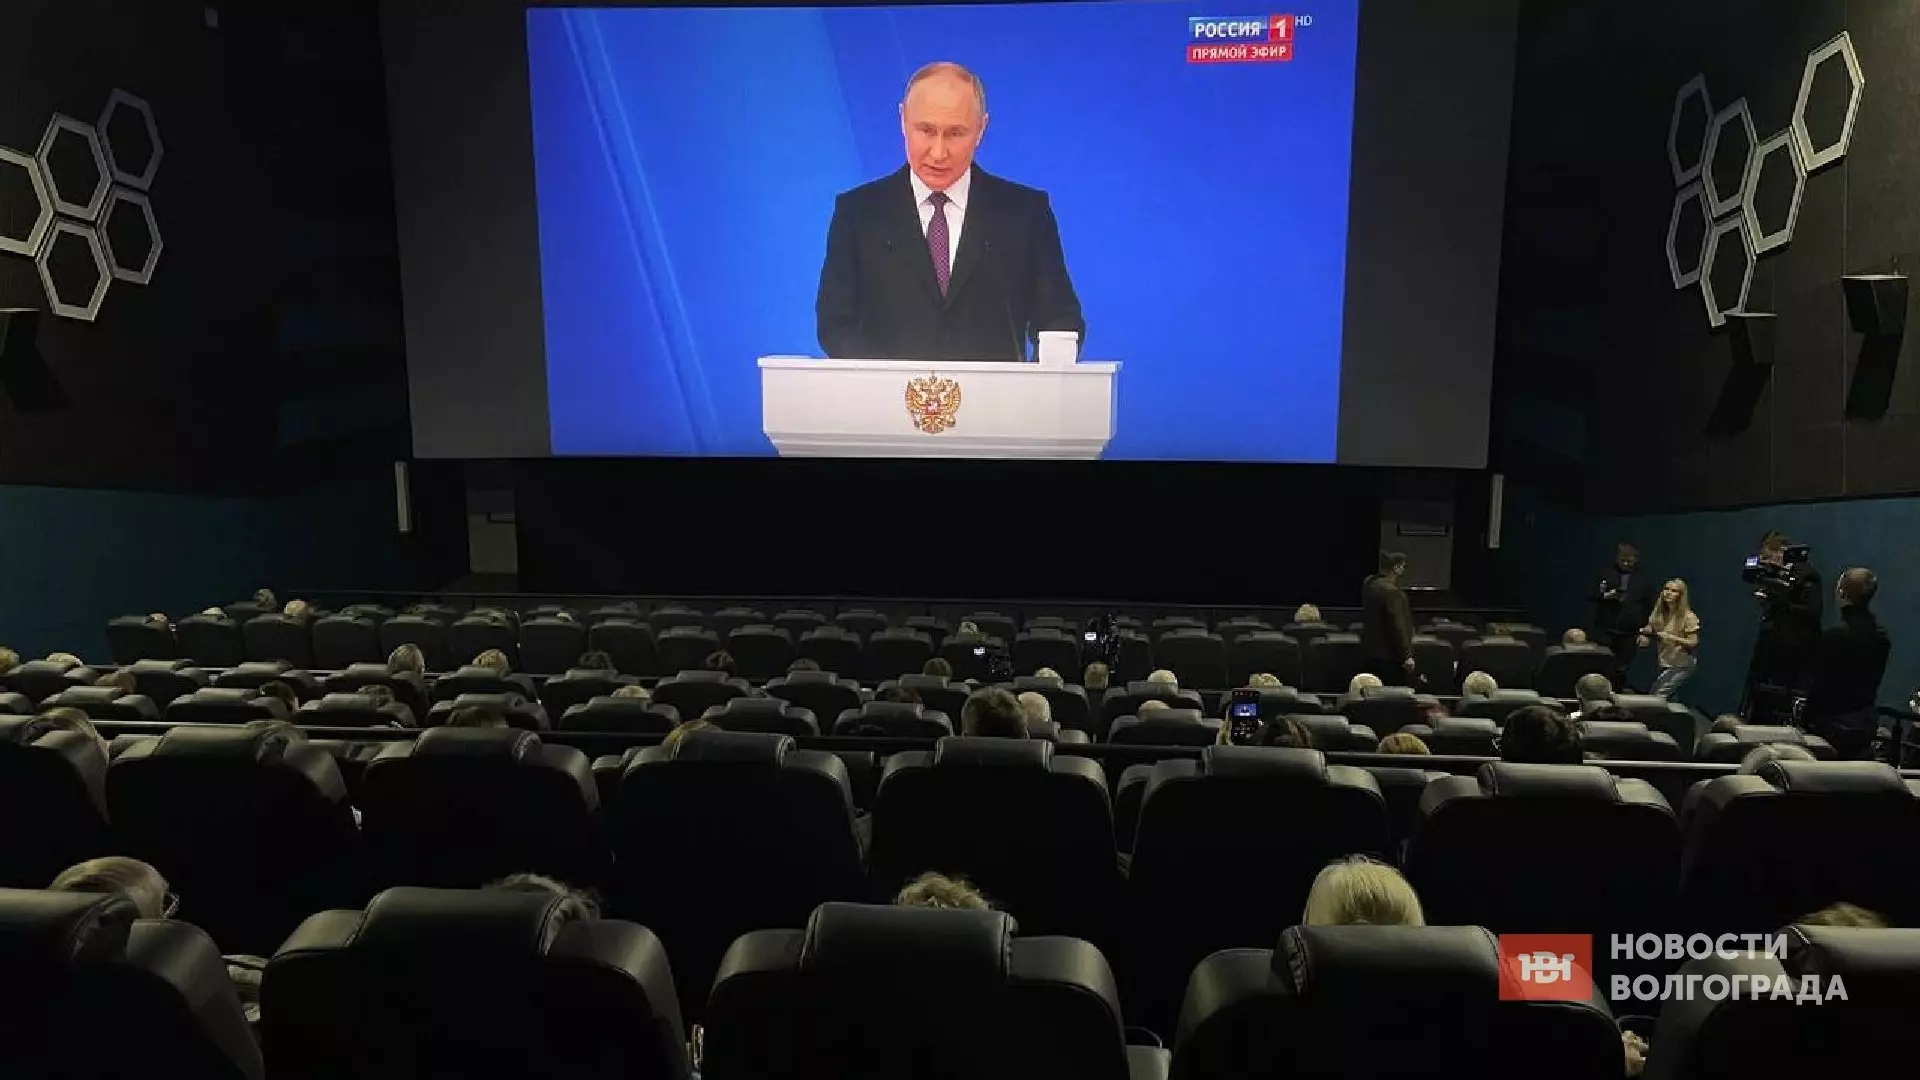 Волгоградцы смотрят Путина в кинотеатре